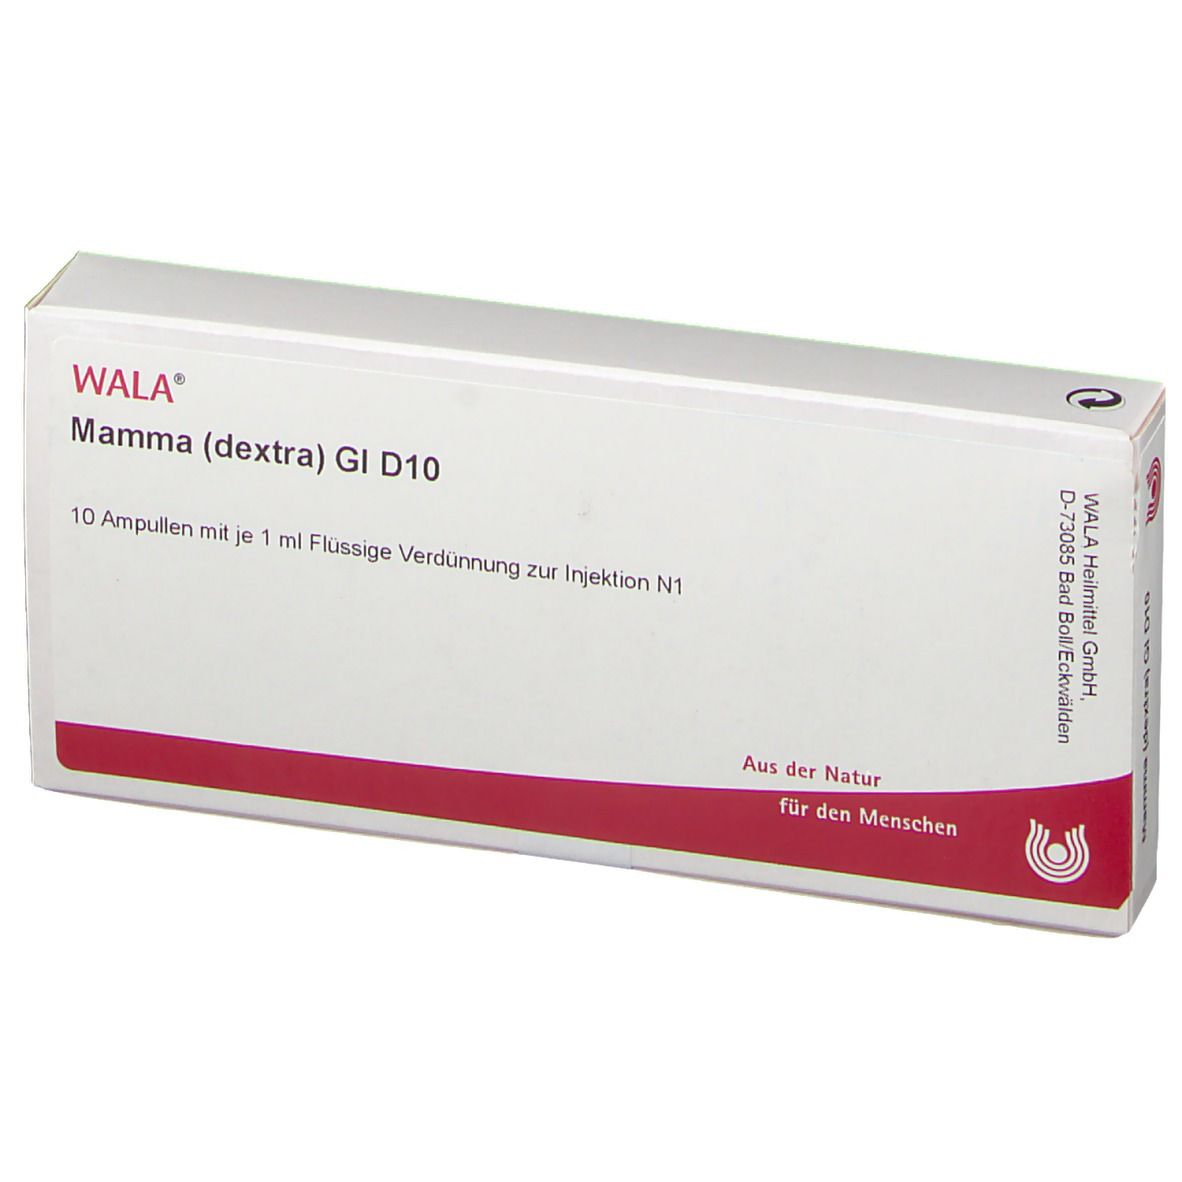 WALA® Mamma dextra Gl D 10